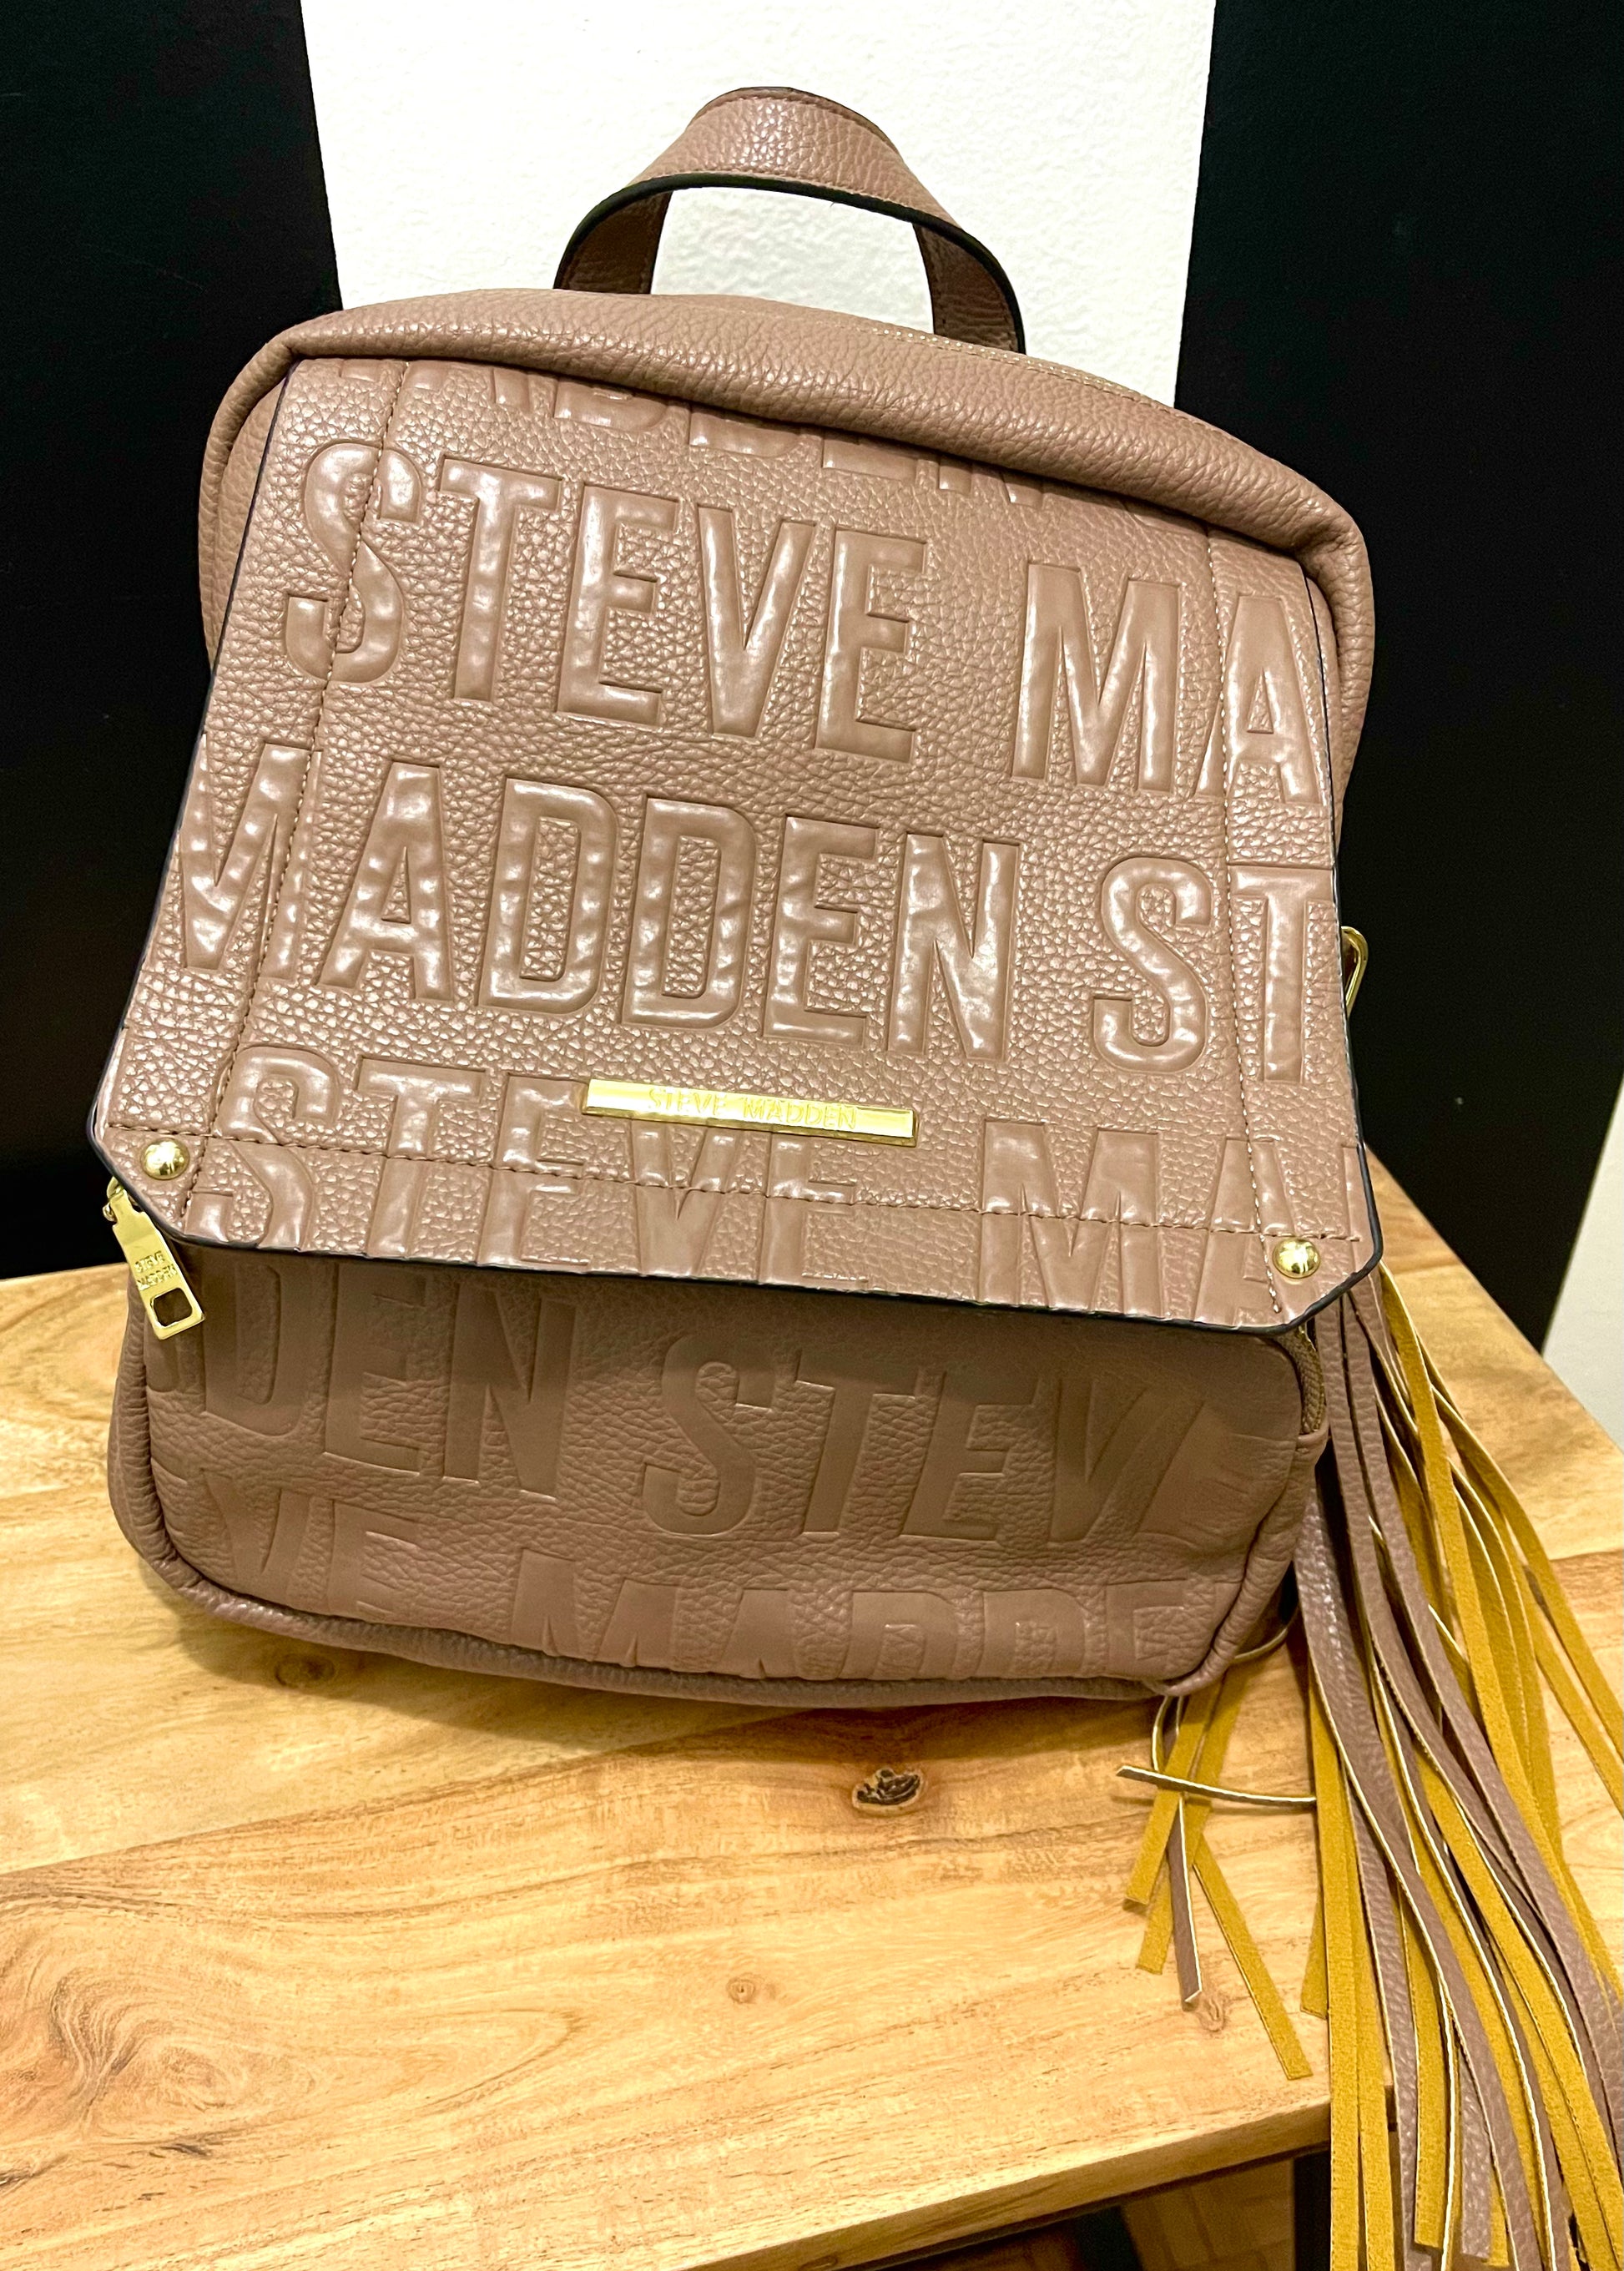 Steve Madden Travel Bag - Women's Handbags - Natick, Massachusetts